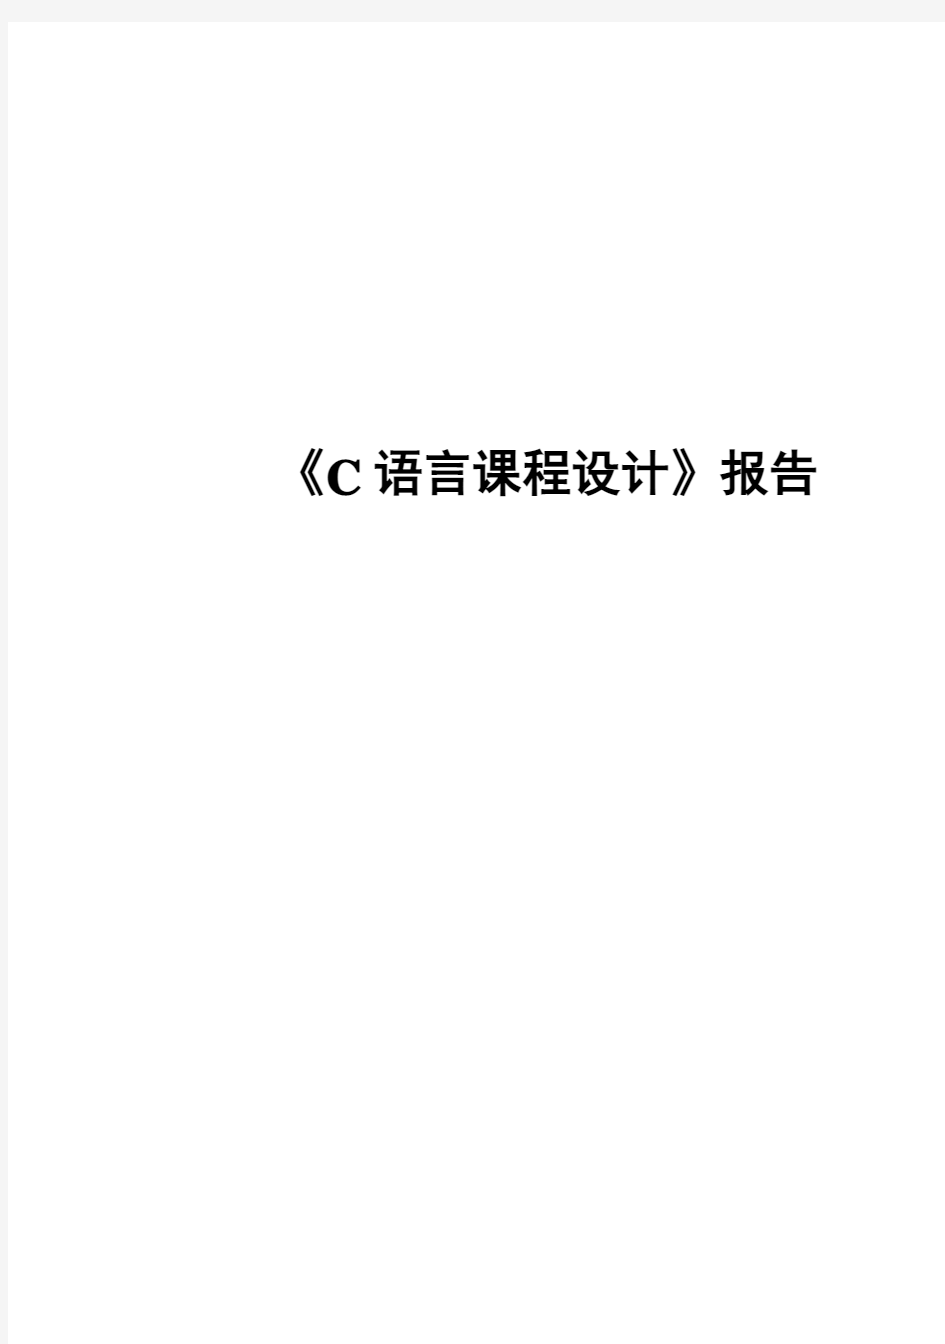 (完整版)C语言毕业课程设计报告【简易计算器设计】